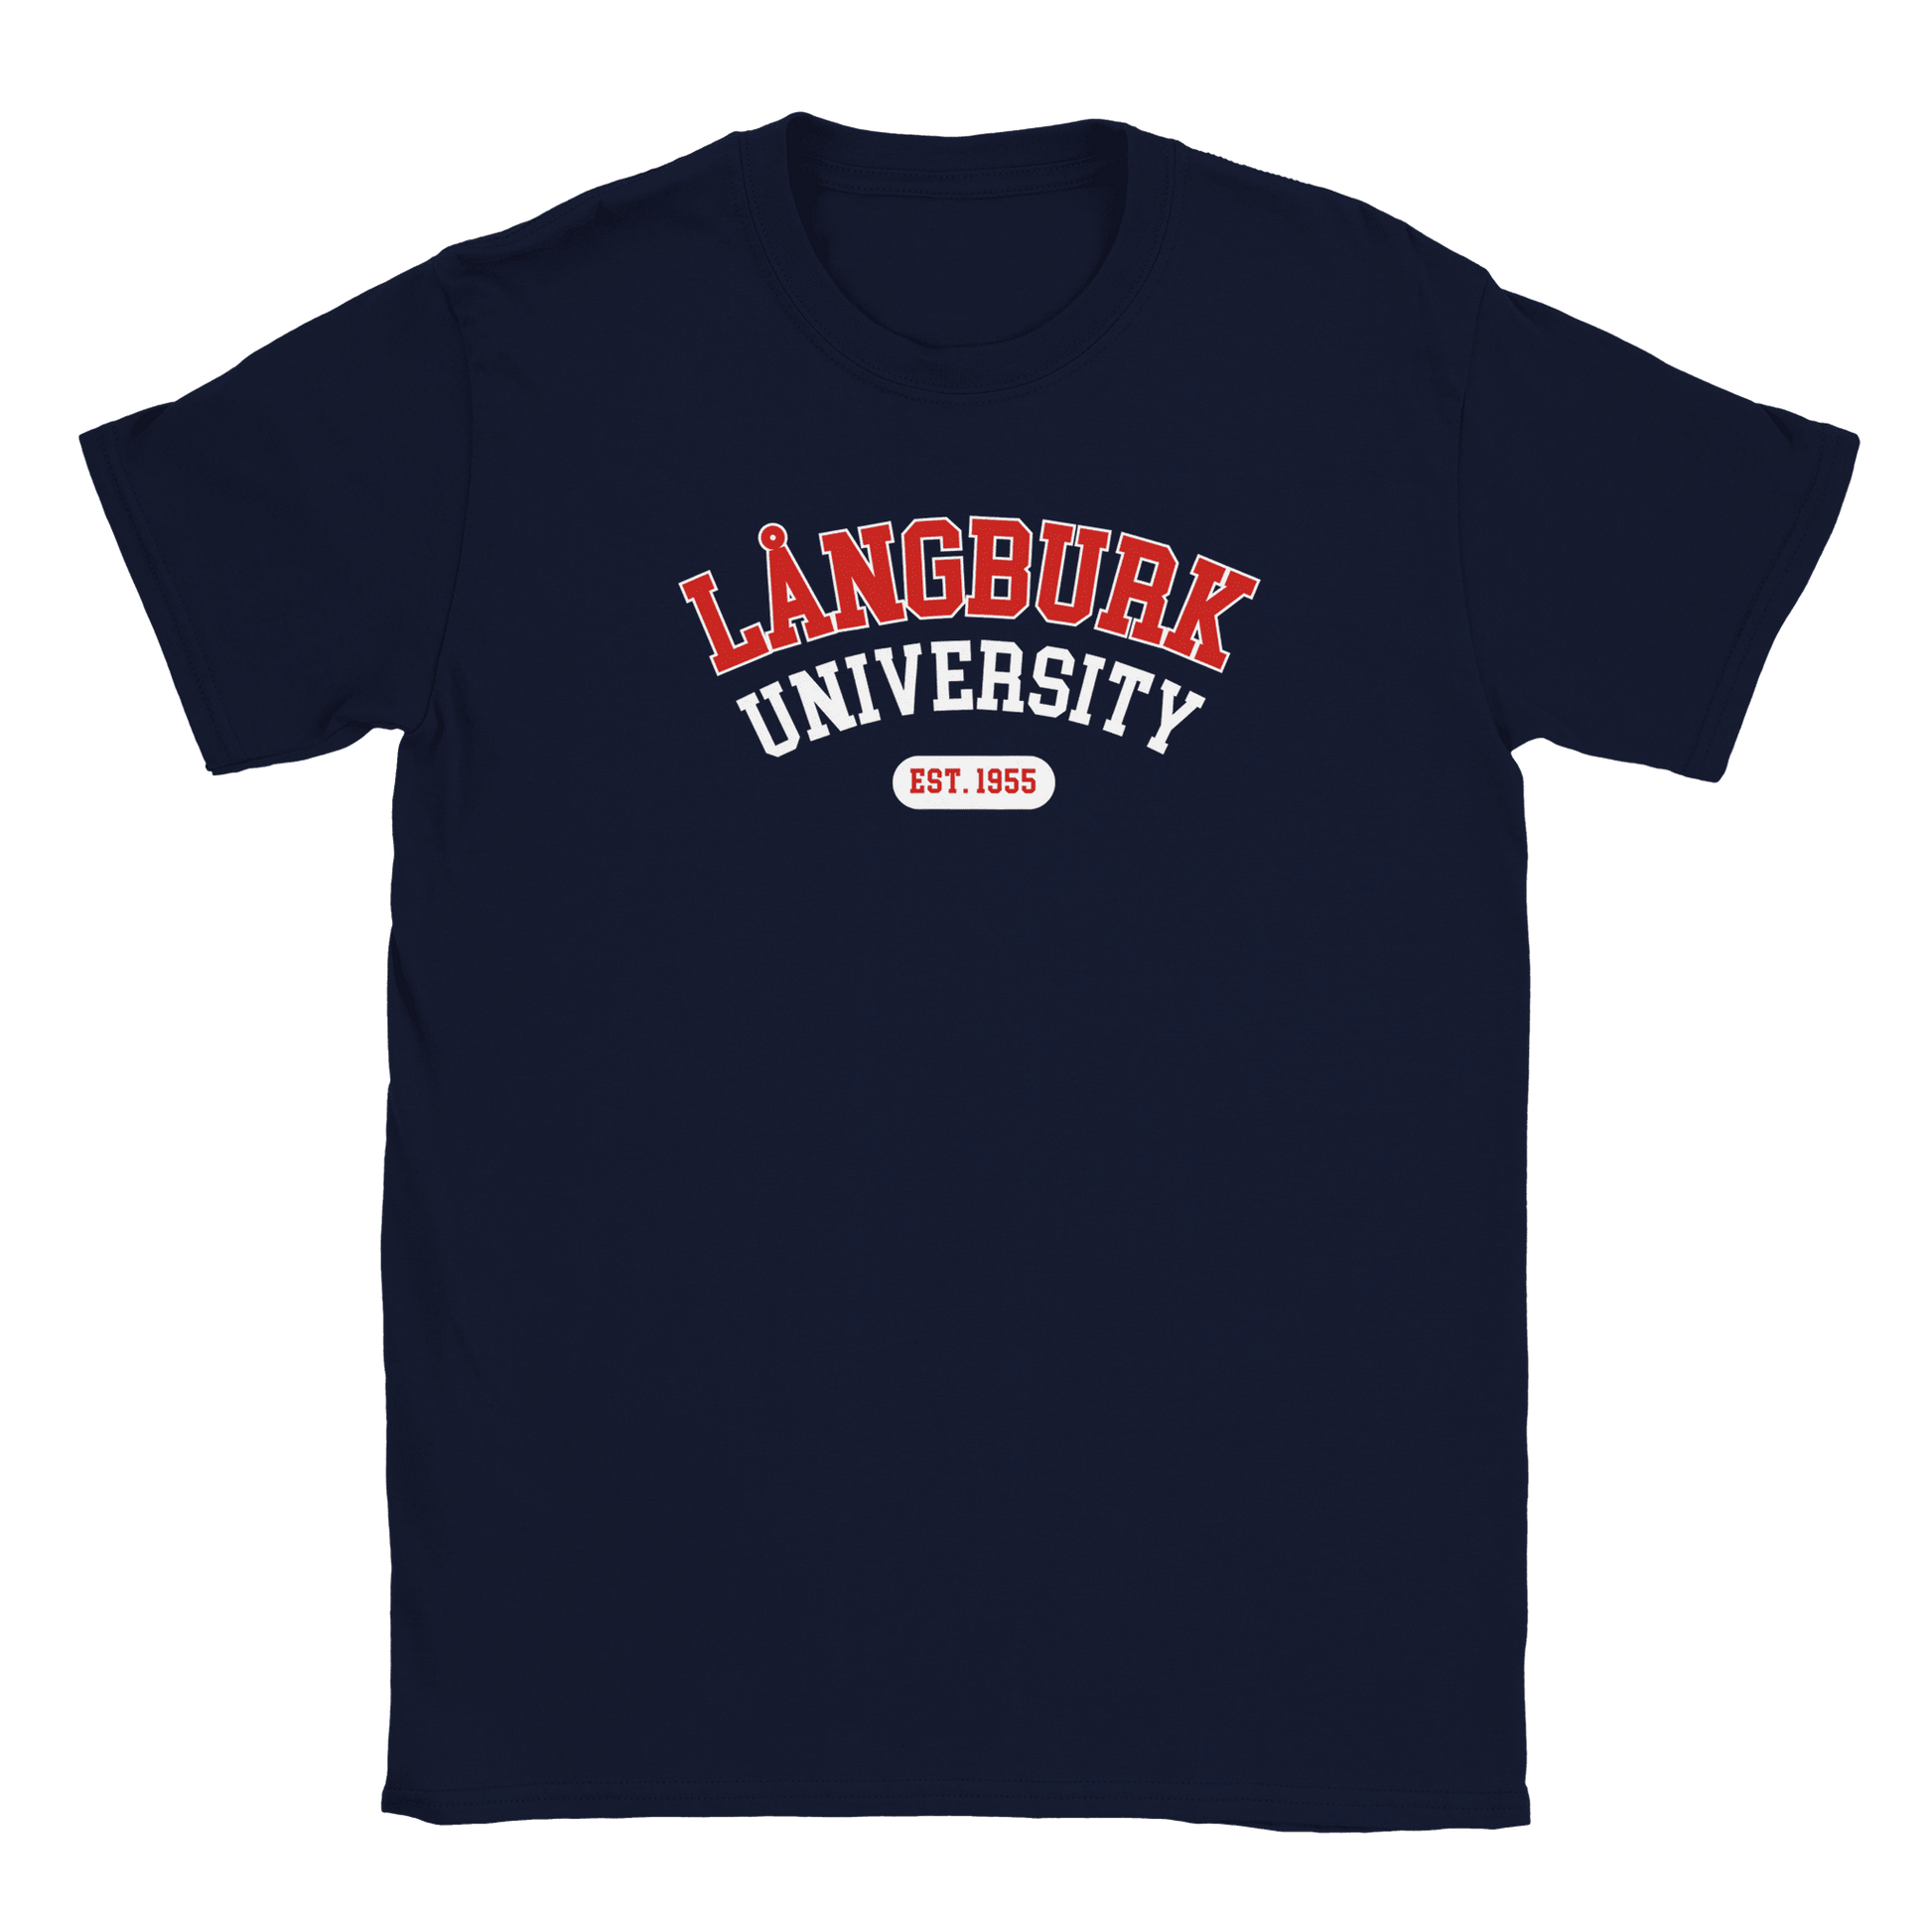 Långburk University Est. 1955 - T-shirt Marinblå